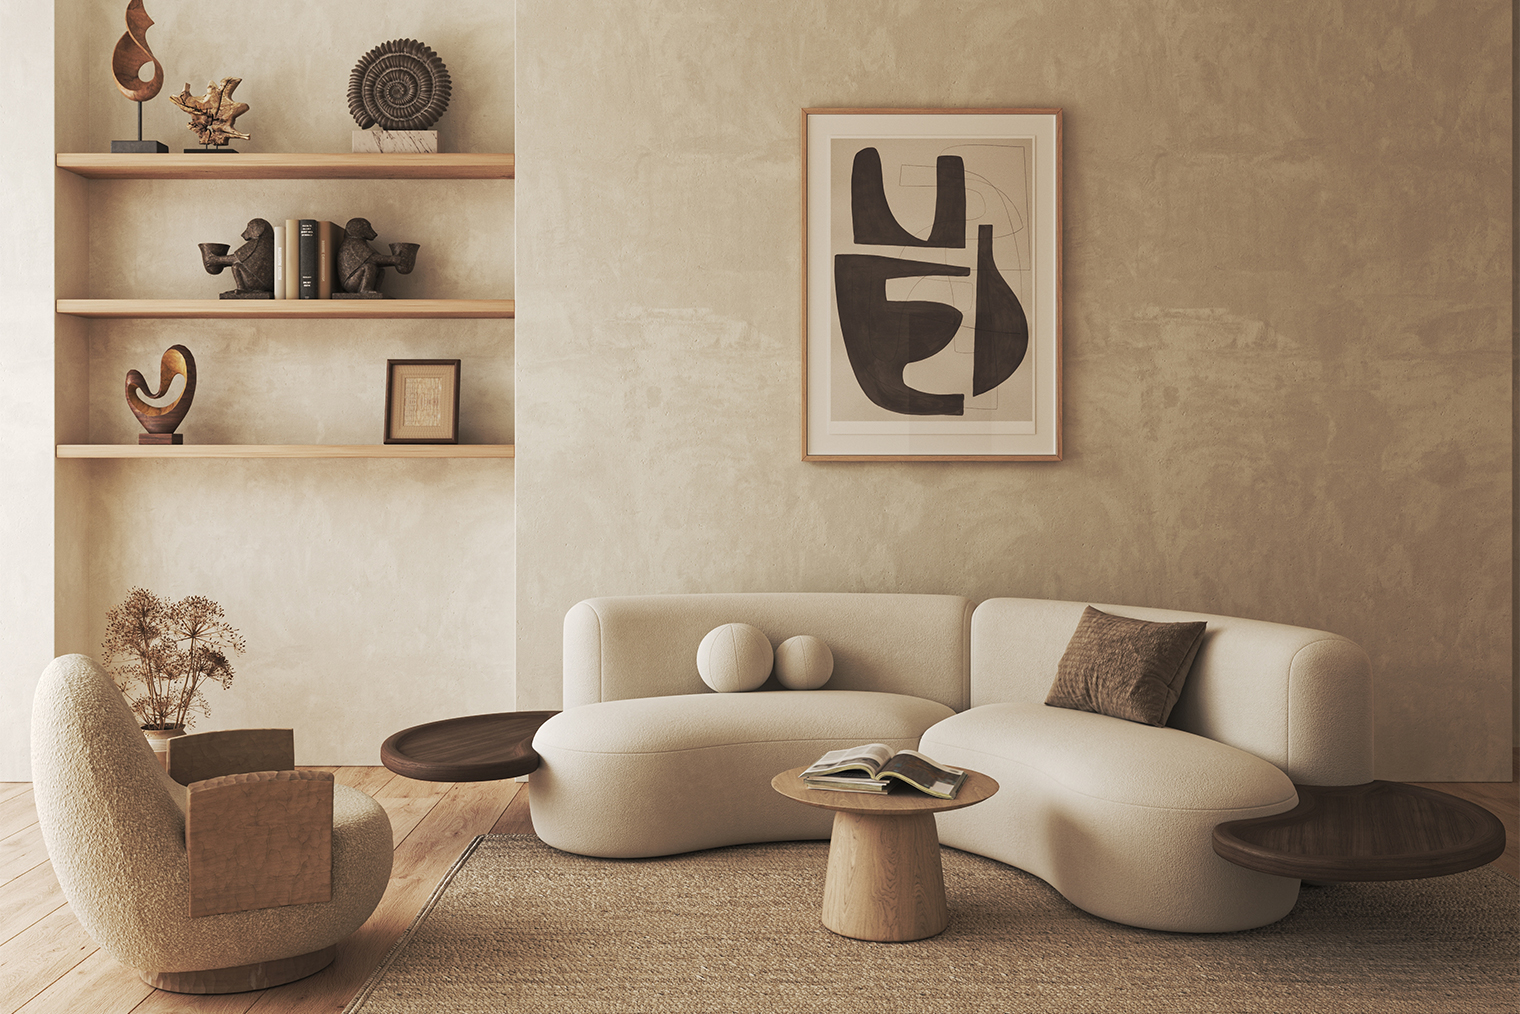 Для гостиной в стиле джапанди выбирайте мебель округлых форм и нестандартный декор. На пол можно положить однотонный фактурный ковер. Фотография: V1ktoria / Shutterstock